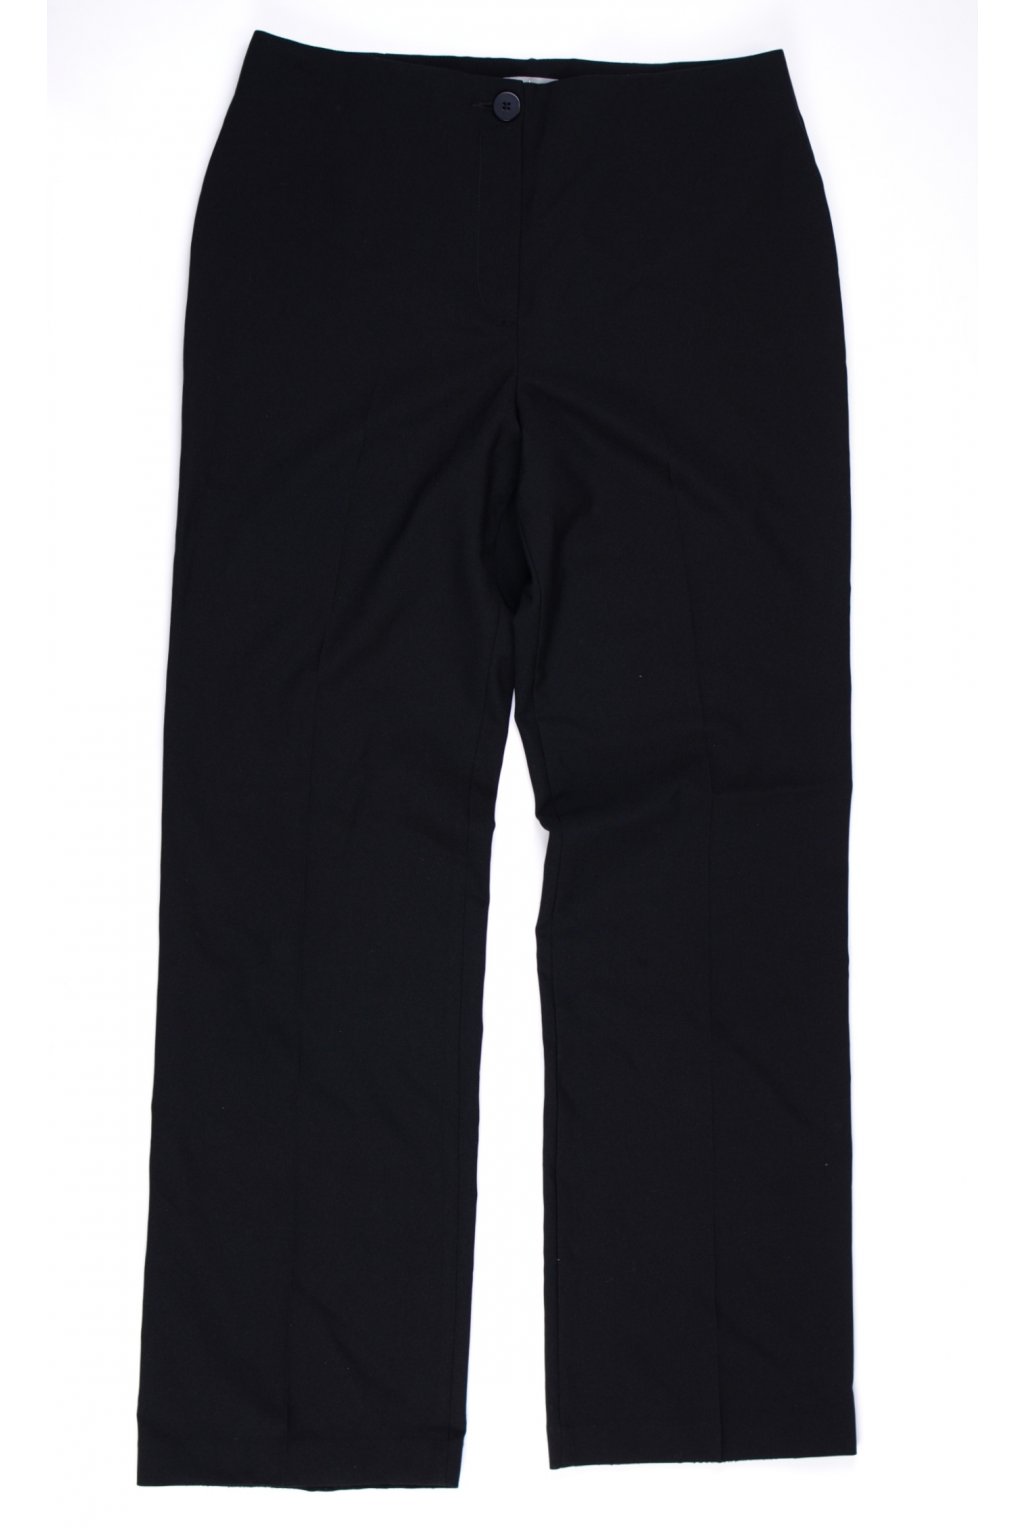 Kalhoty M&S Woman vel M/UK12 černé formální